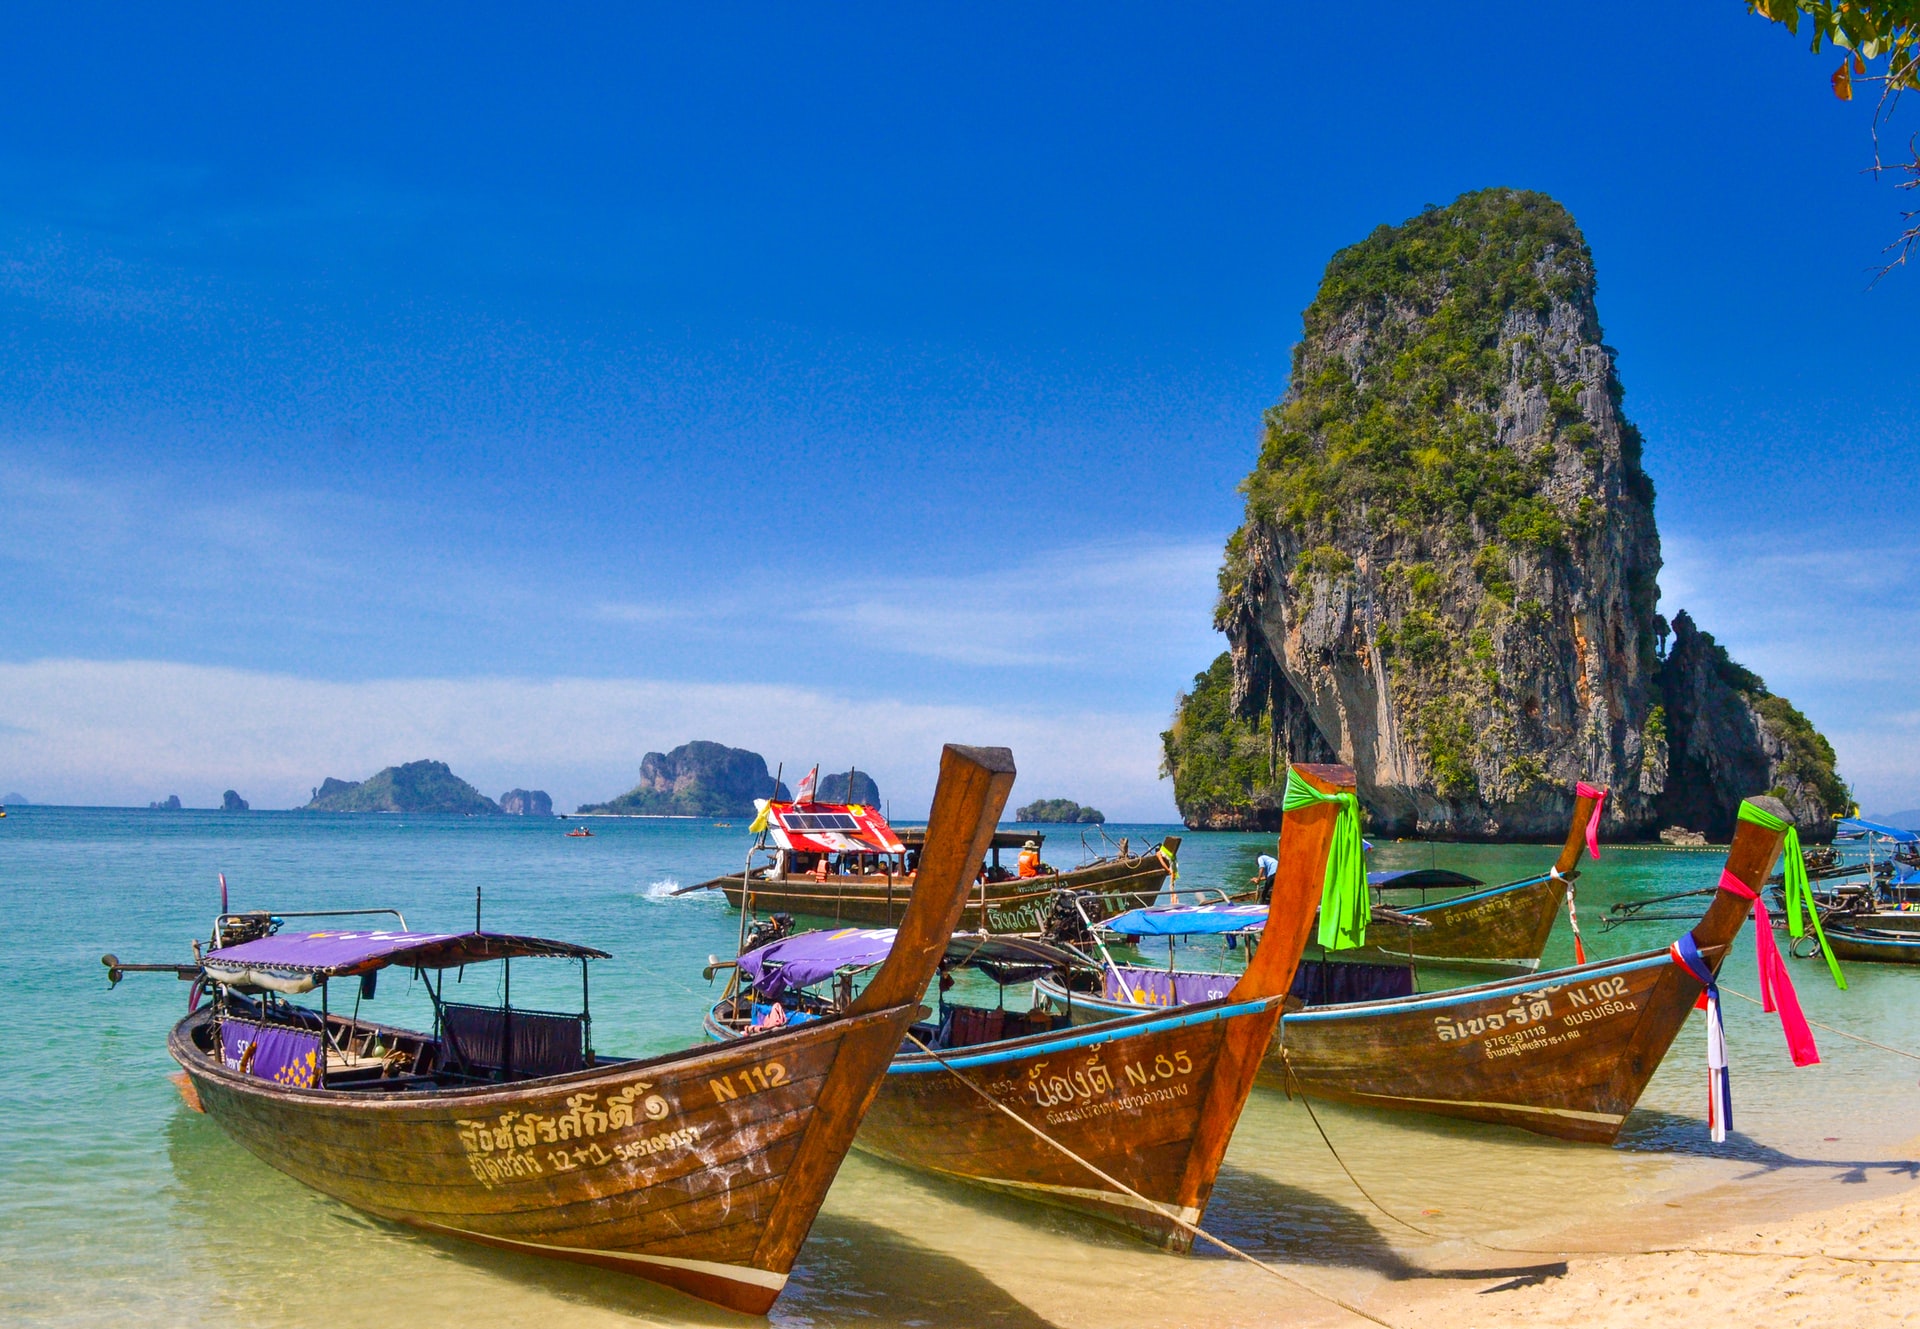 Thailand, a paradise on earth